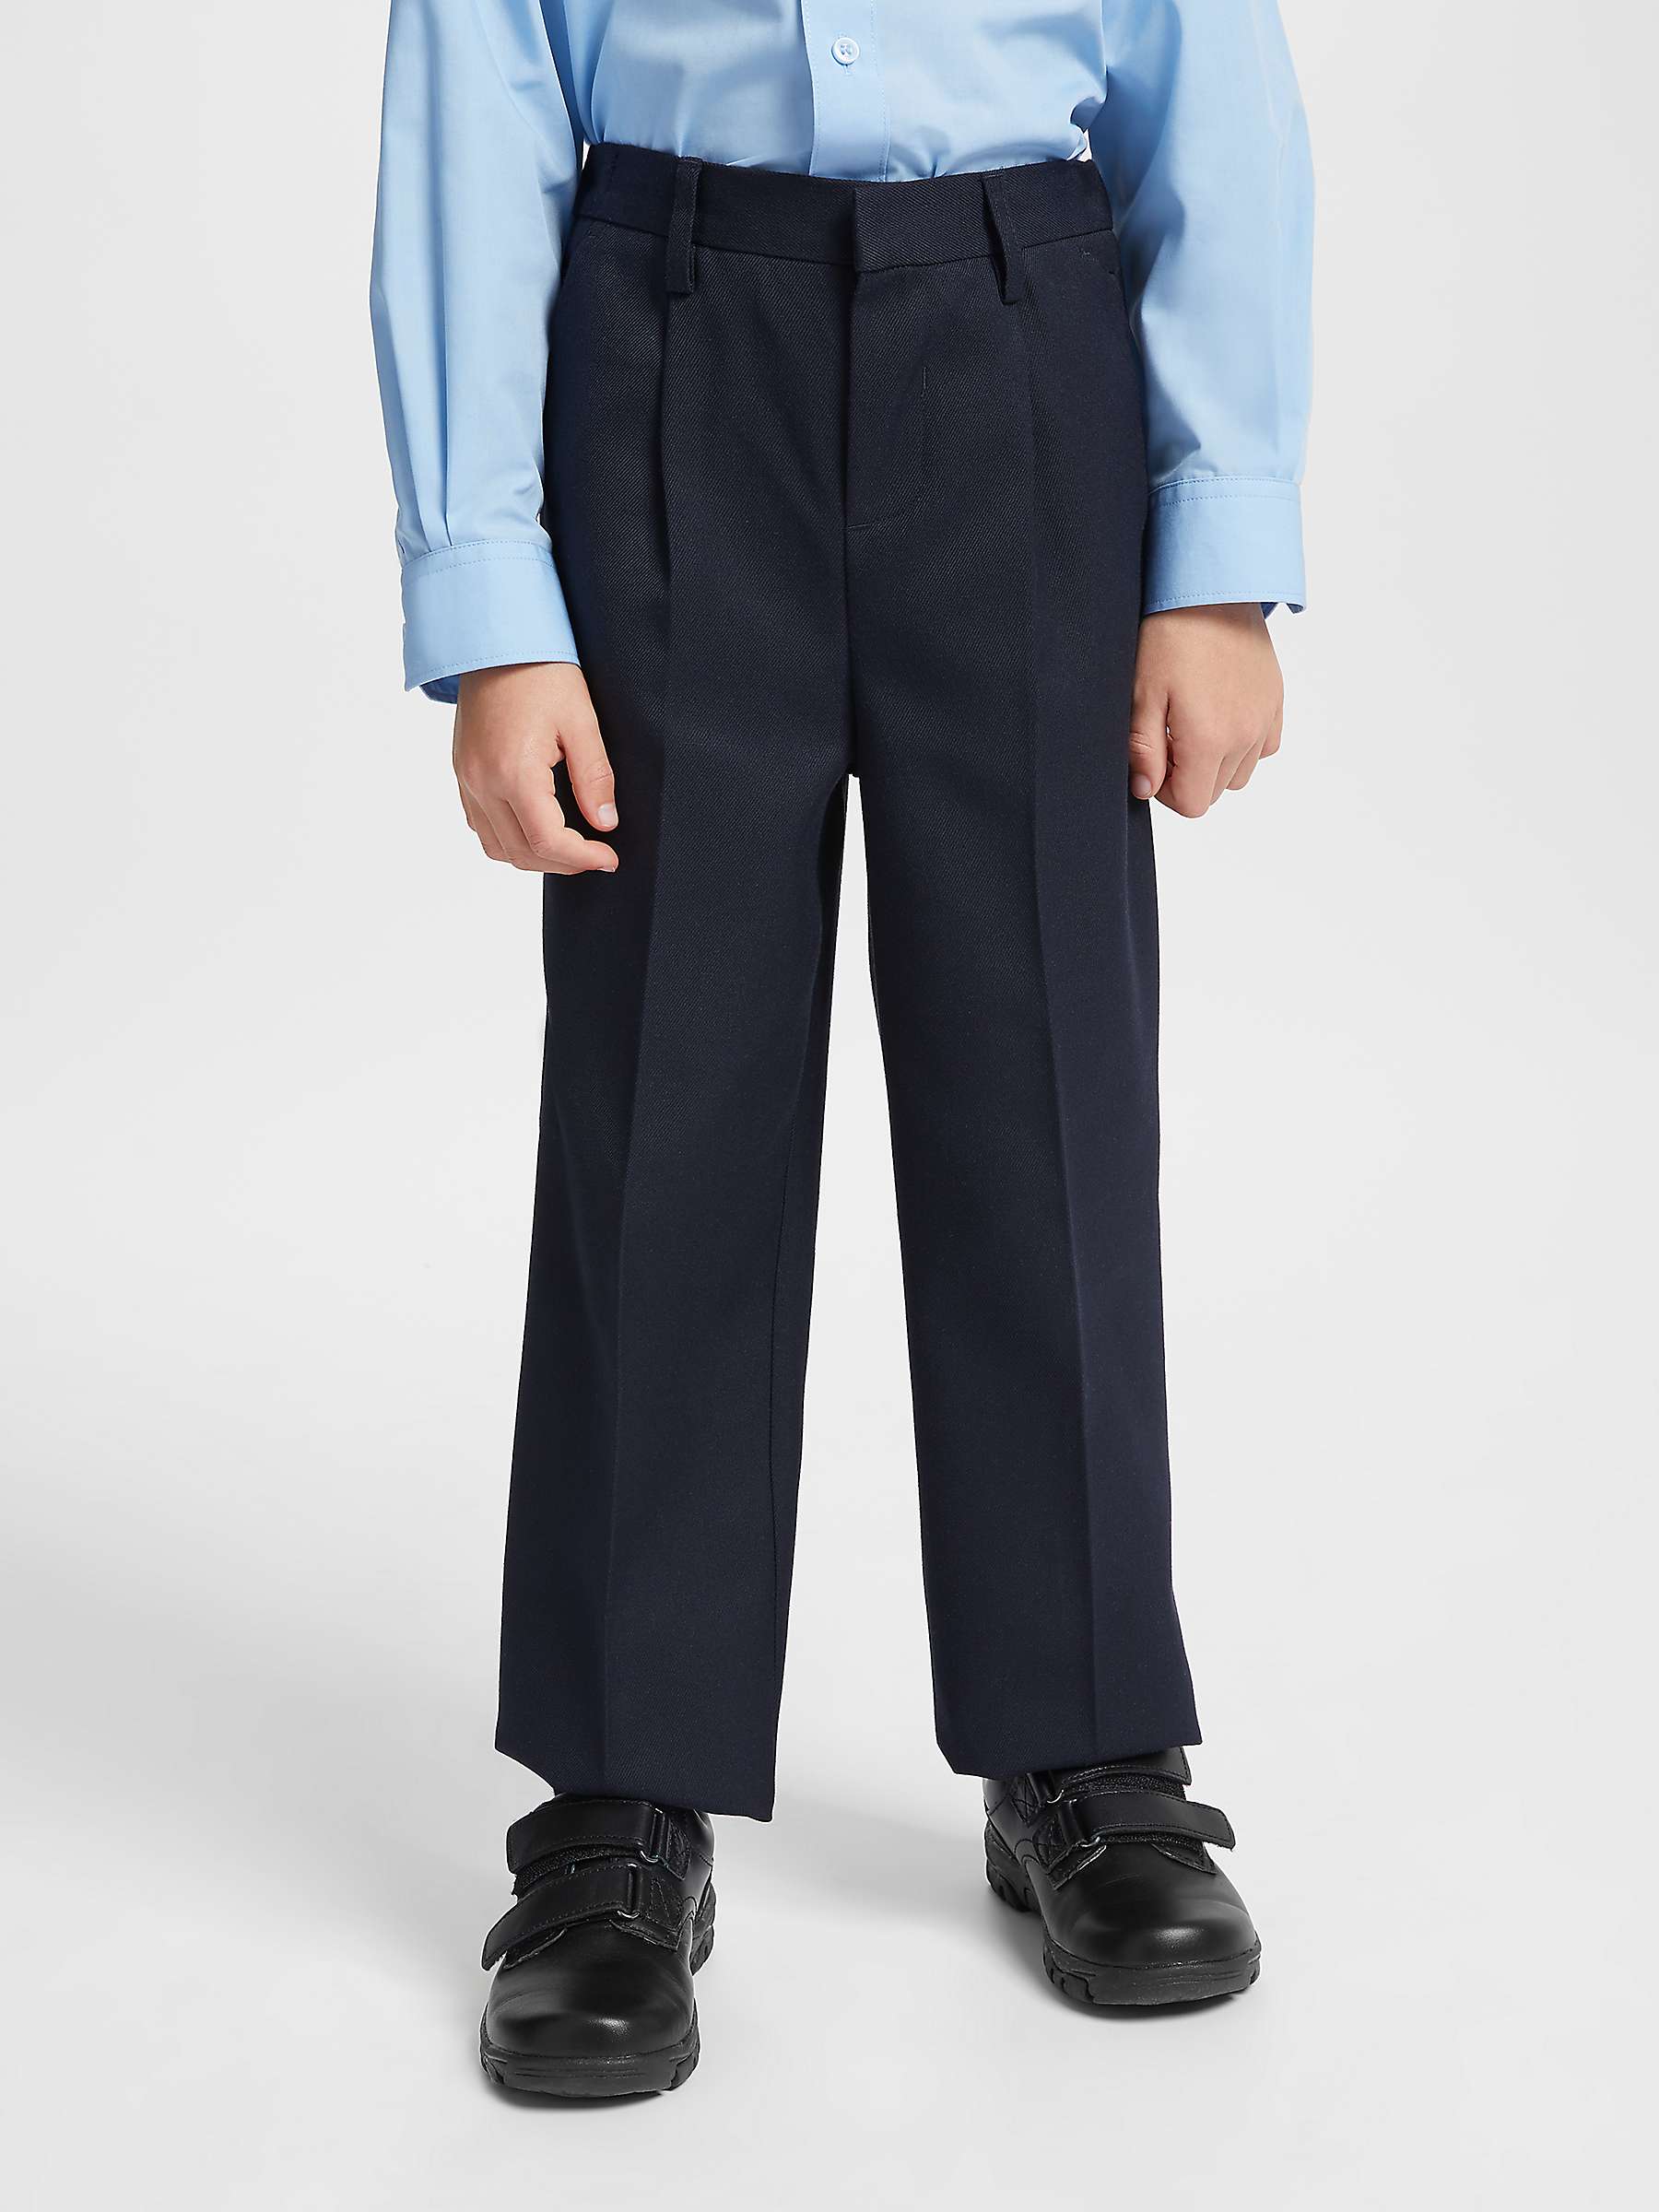 Ages 9-16 Boys Slim Fit School Trousers Black Grey Navy Pants Skinny Adjustable